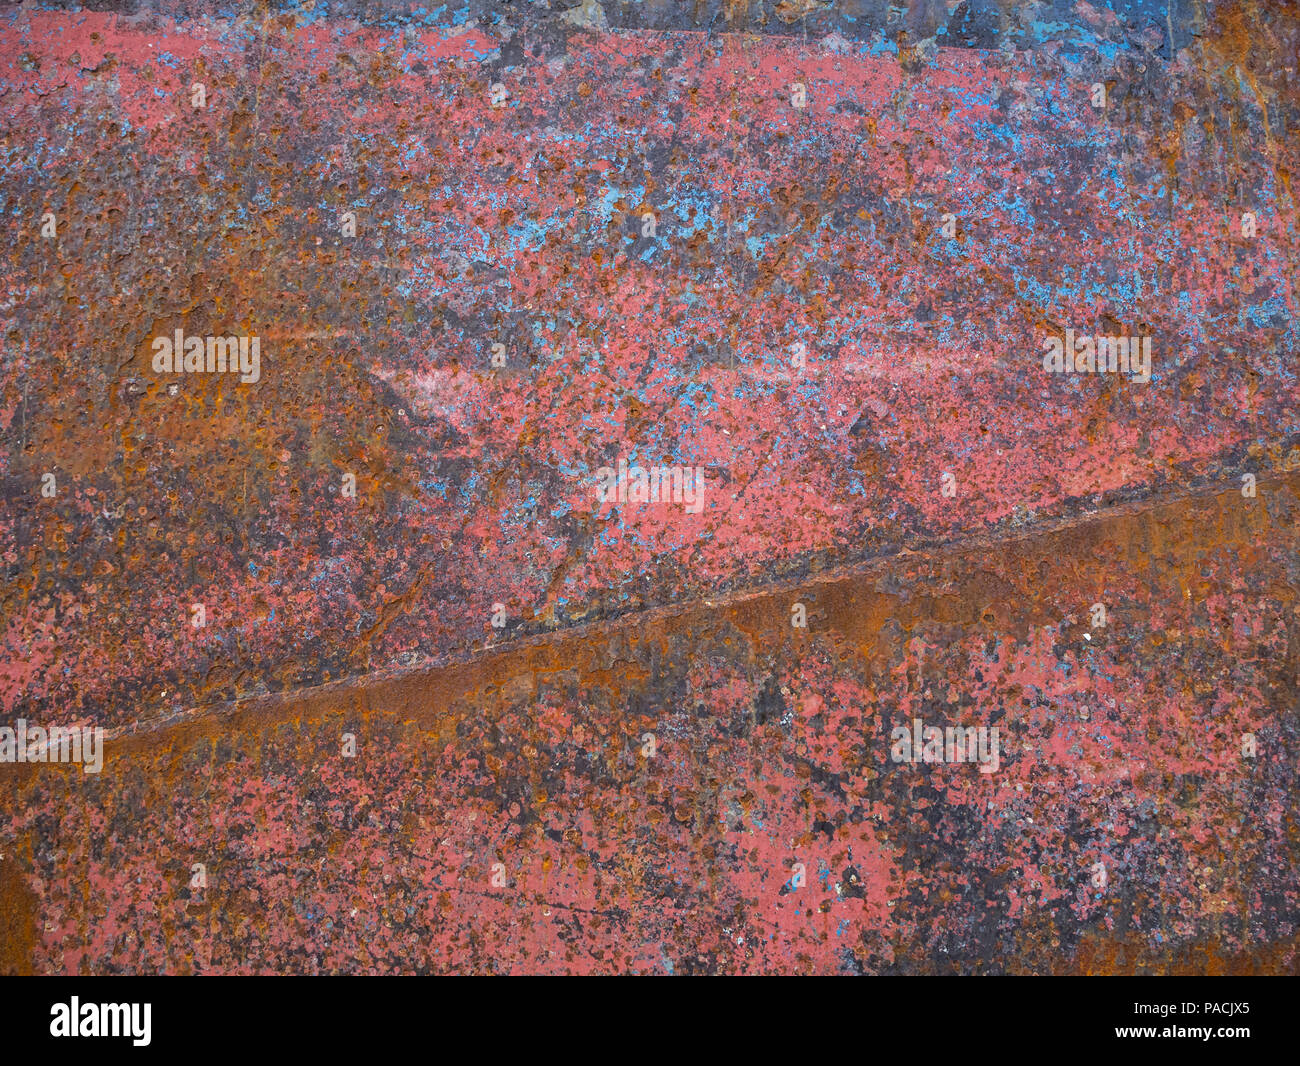 Cerca de Rusted metal corroído y pintura desconchada Foto de stock